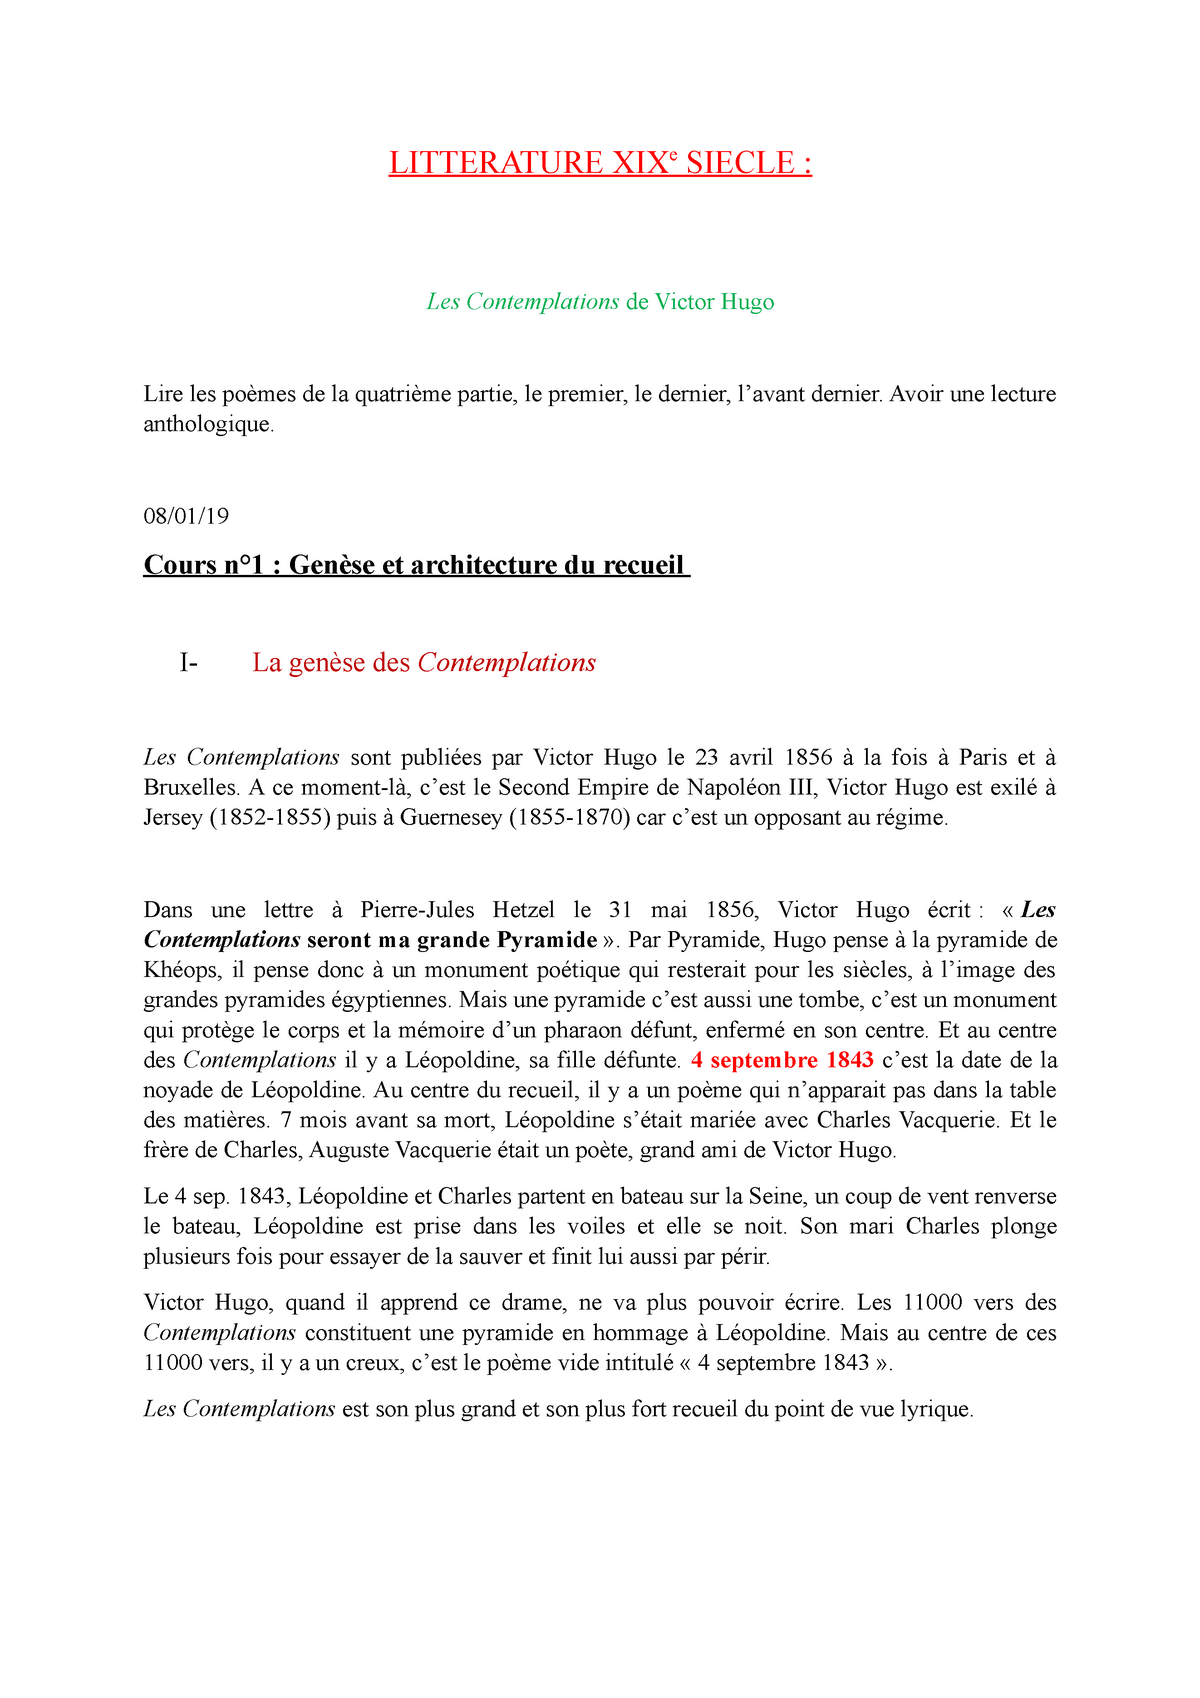 Dissertation Sur Les Contemplations De Victor Hugo  La Galerie